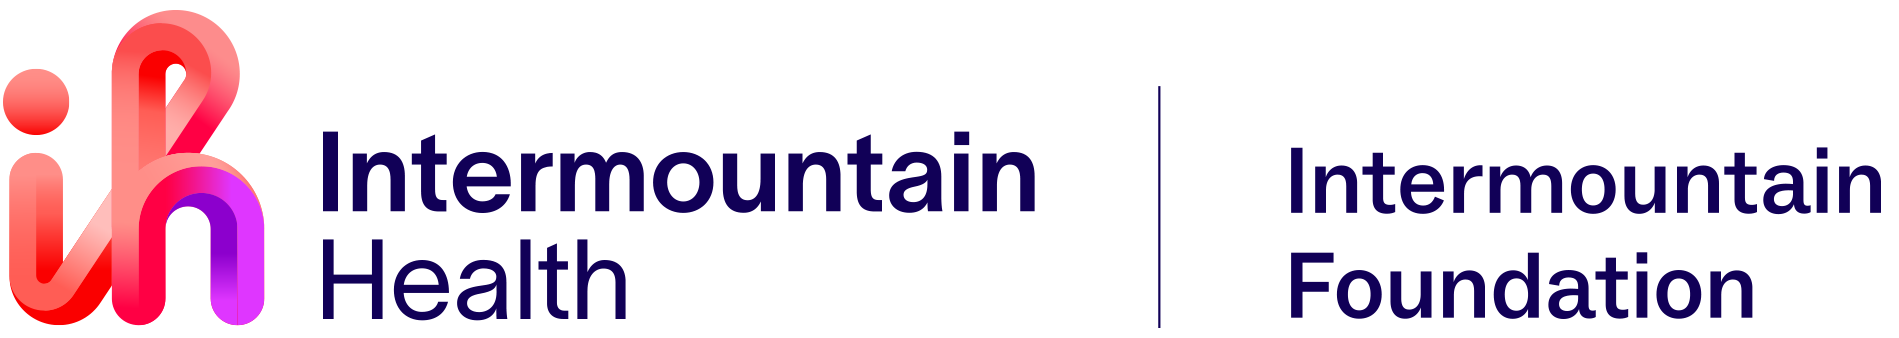 INTERMOUNTAIN HEALTHCARE FOUNDATION INC logo logo